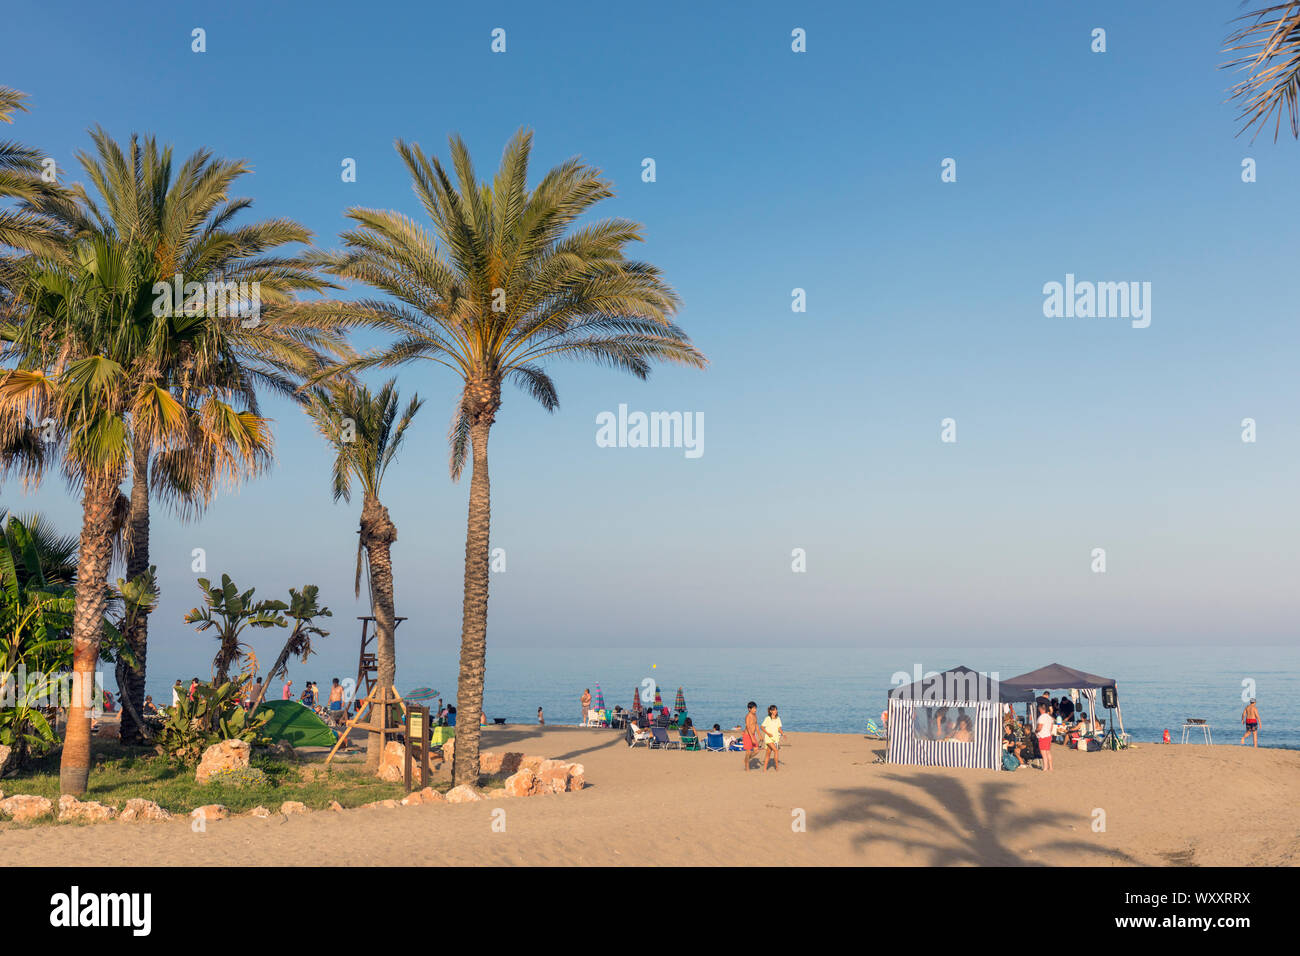 El Bombo beach, La Cala de Mijas, Costa del Sol, provincia di Malaga, Andalusia, Spagna meridionale. Foto Stock